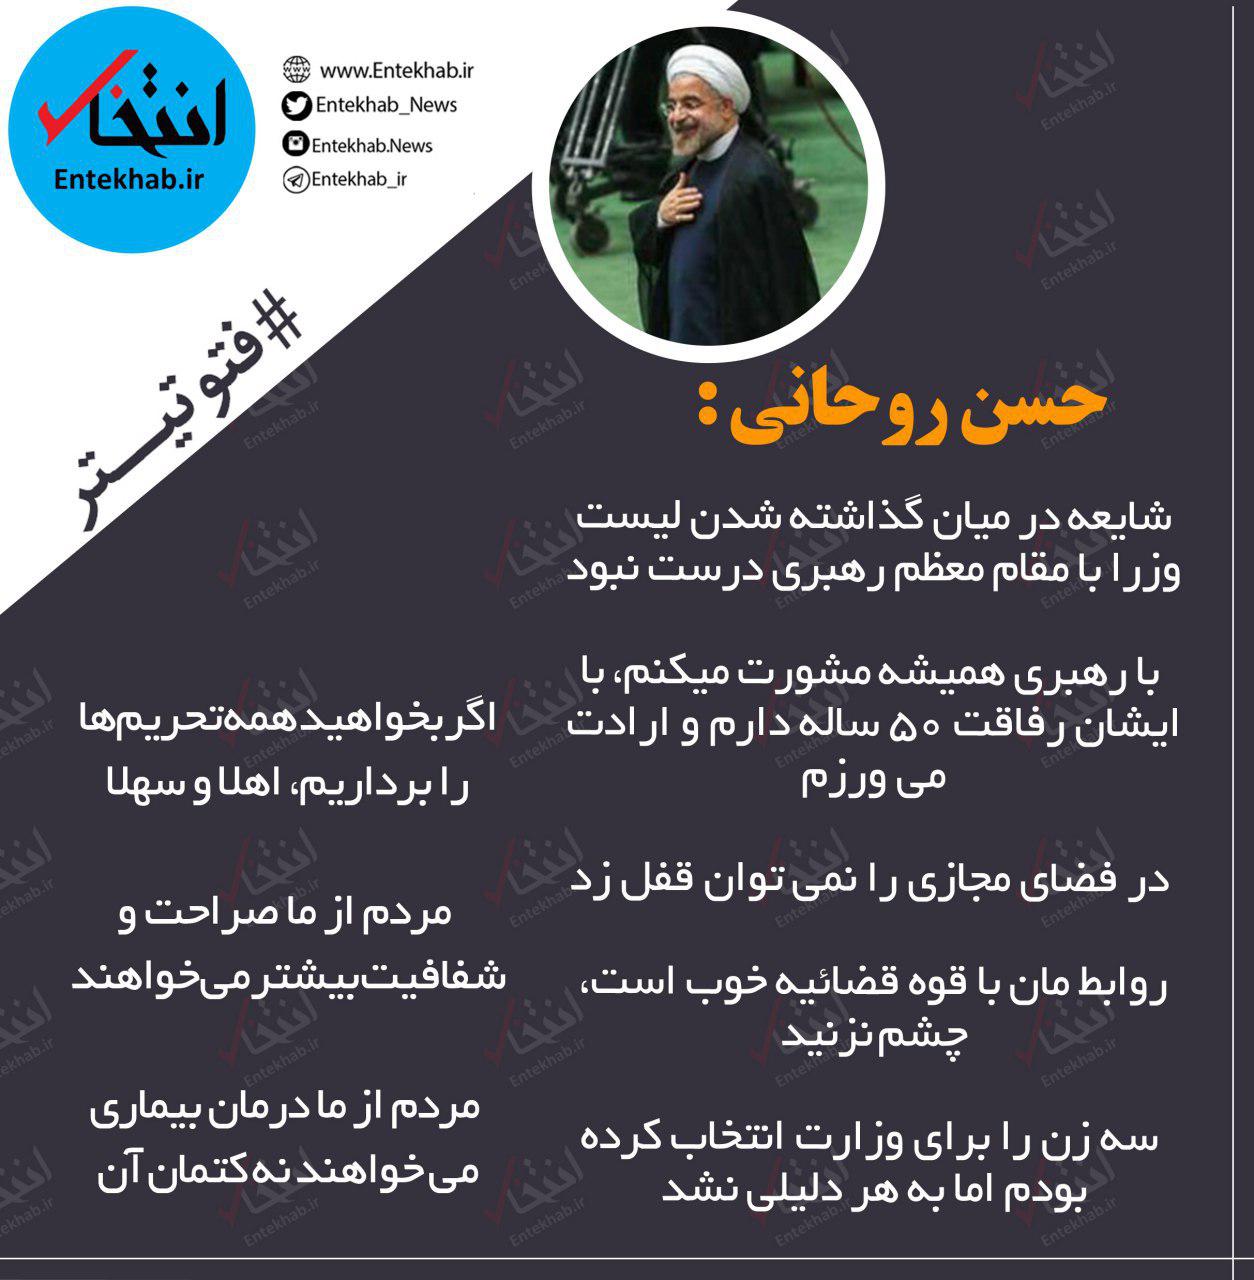 فتوتیترهای سه شنبه: از صبر ایوب ظریف تا نطق تند نماینده جنجالی علیه وزیر دهه شصتی روحانی